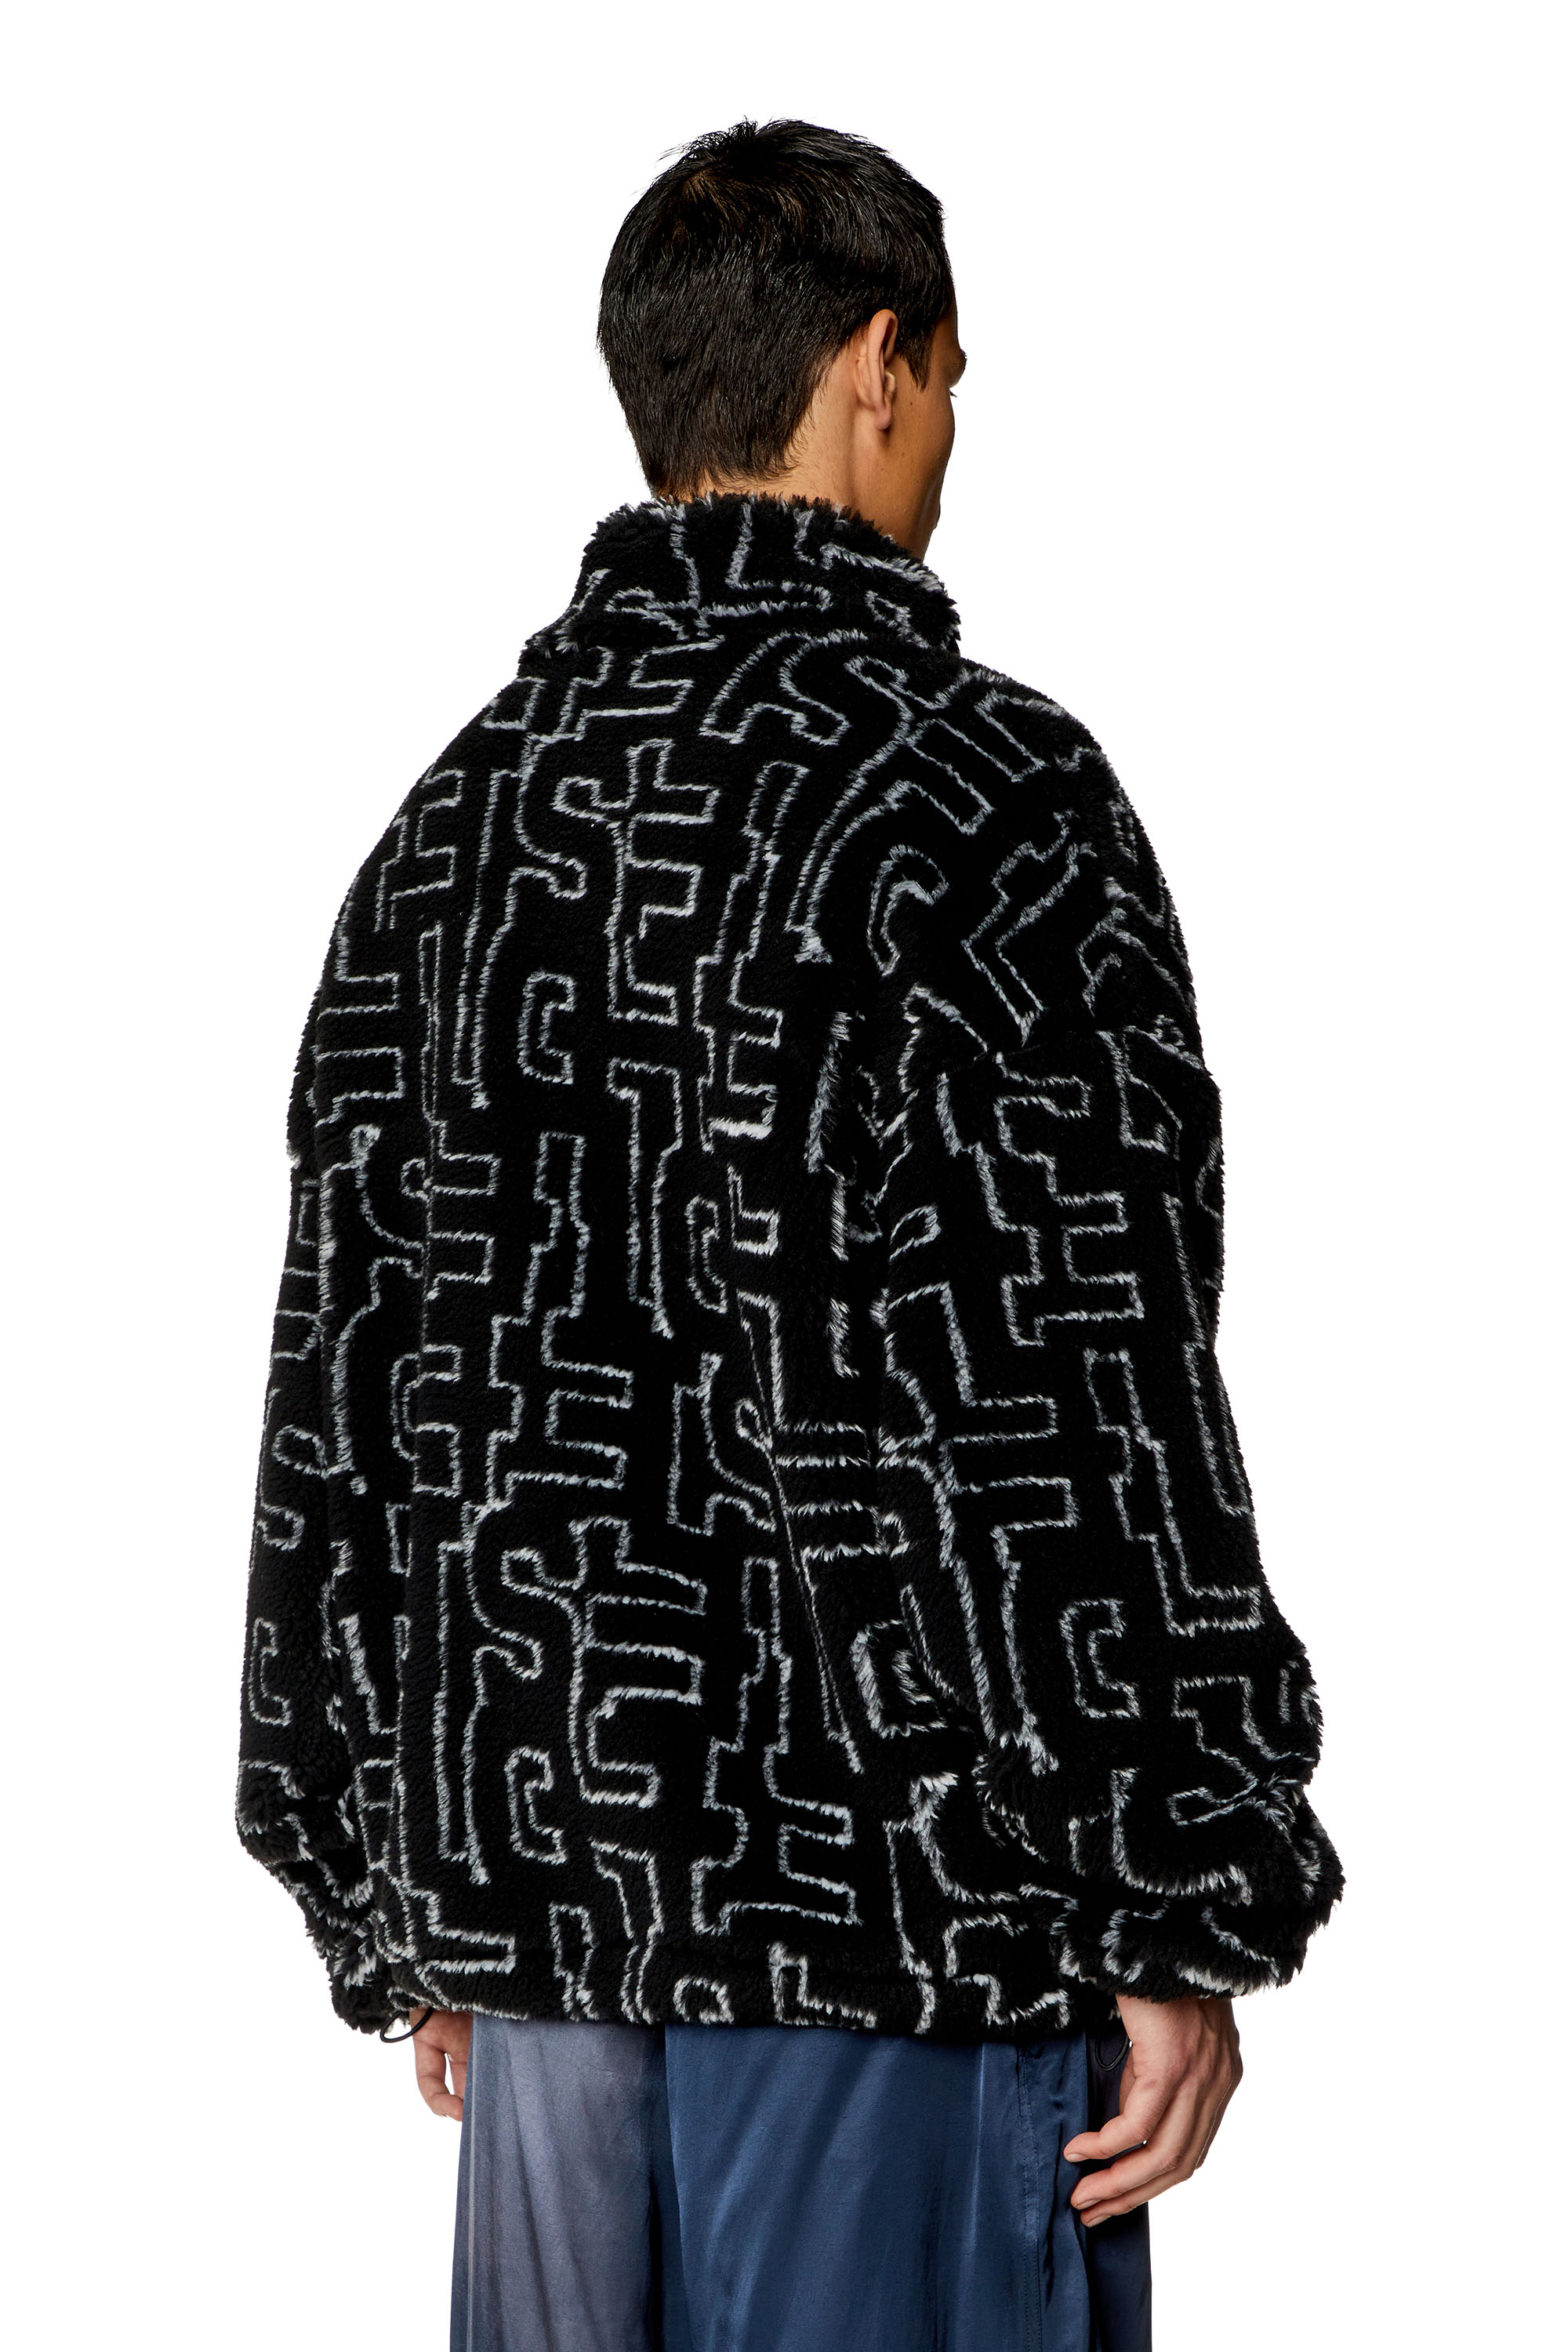 Louis Vuitton Uniform AUTH Black Texture Fabric UNIQUE Bomber LV